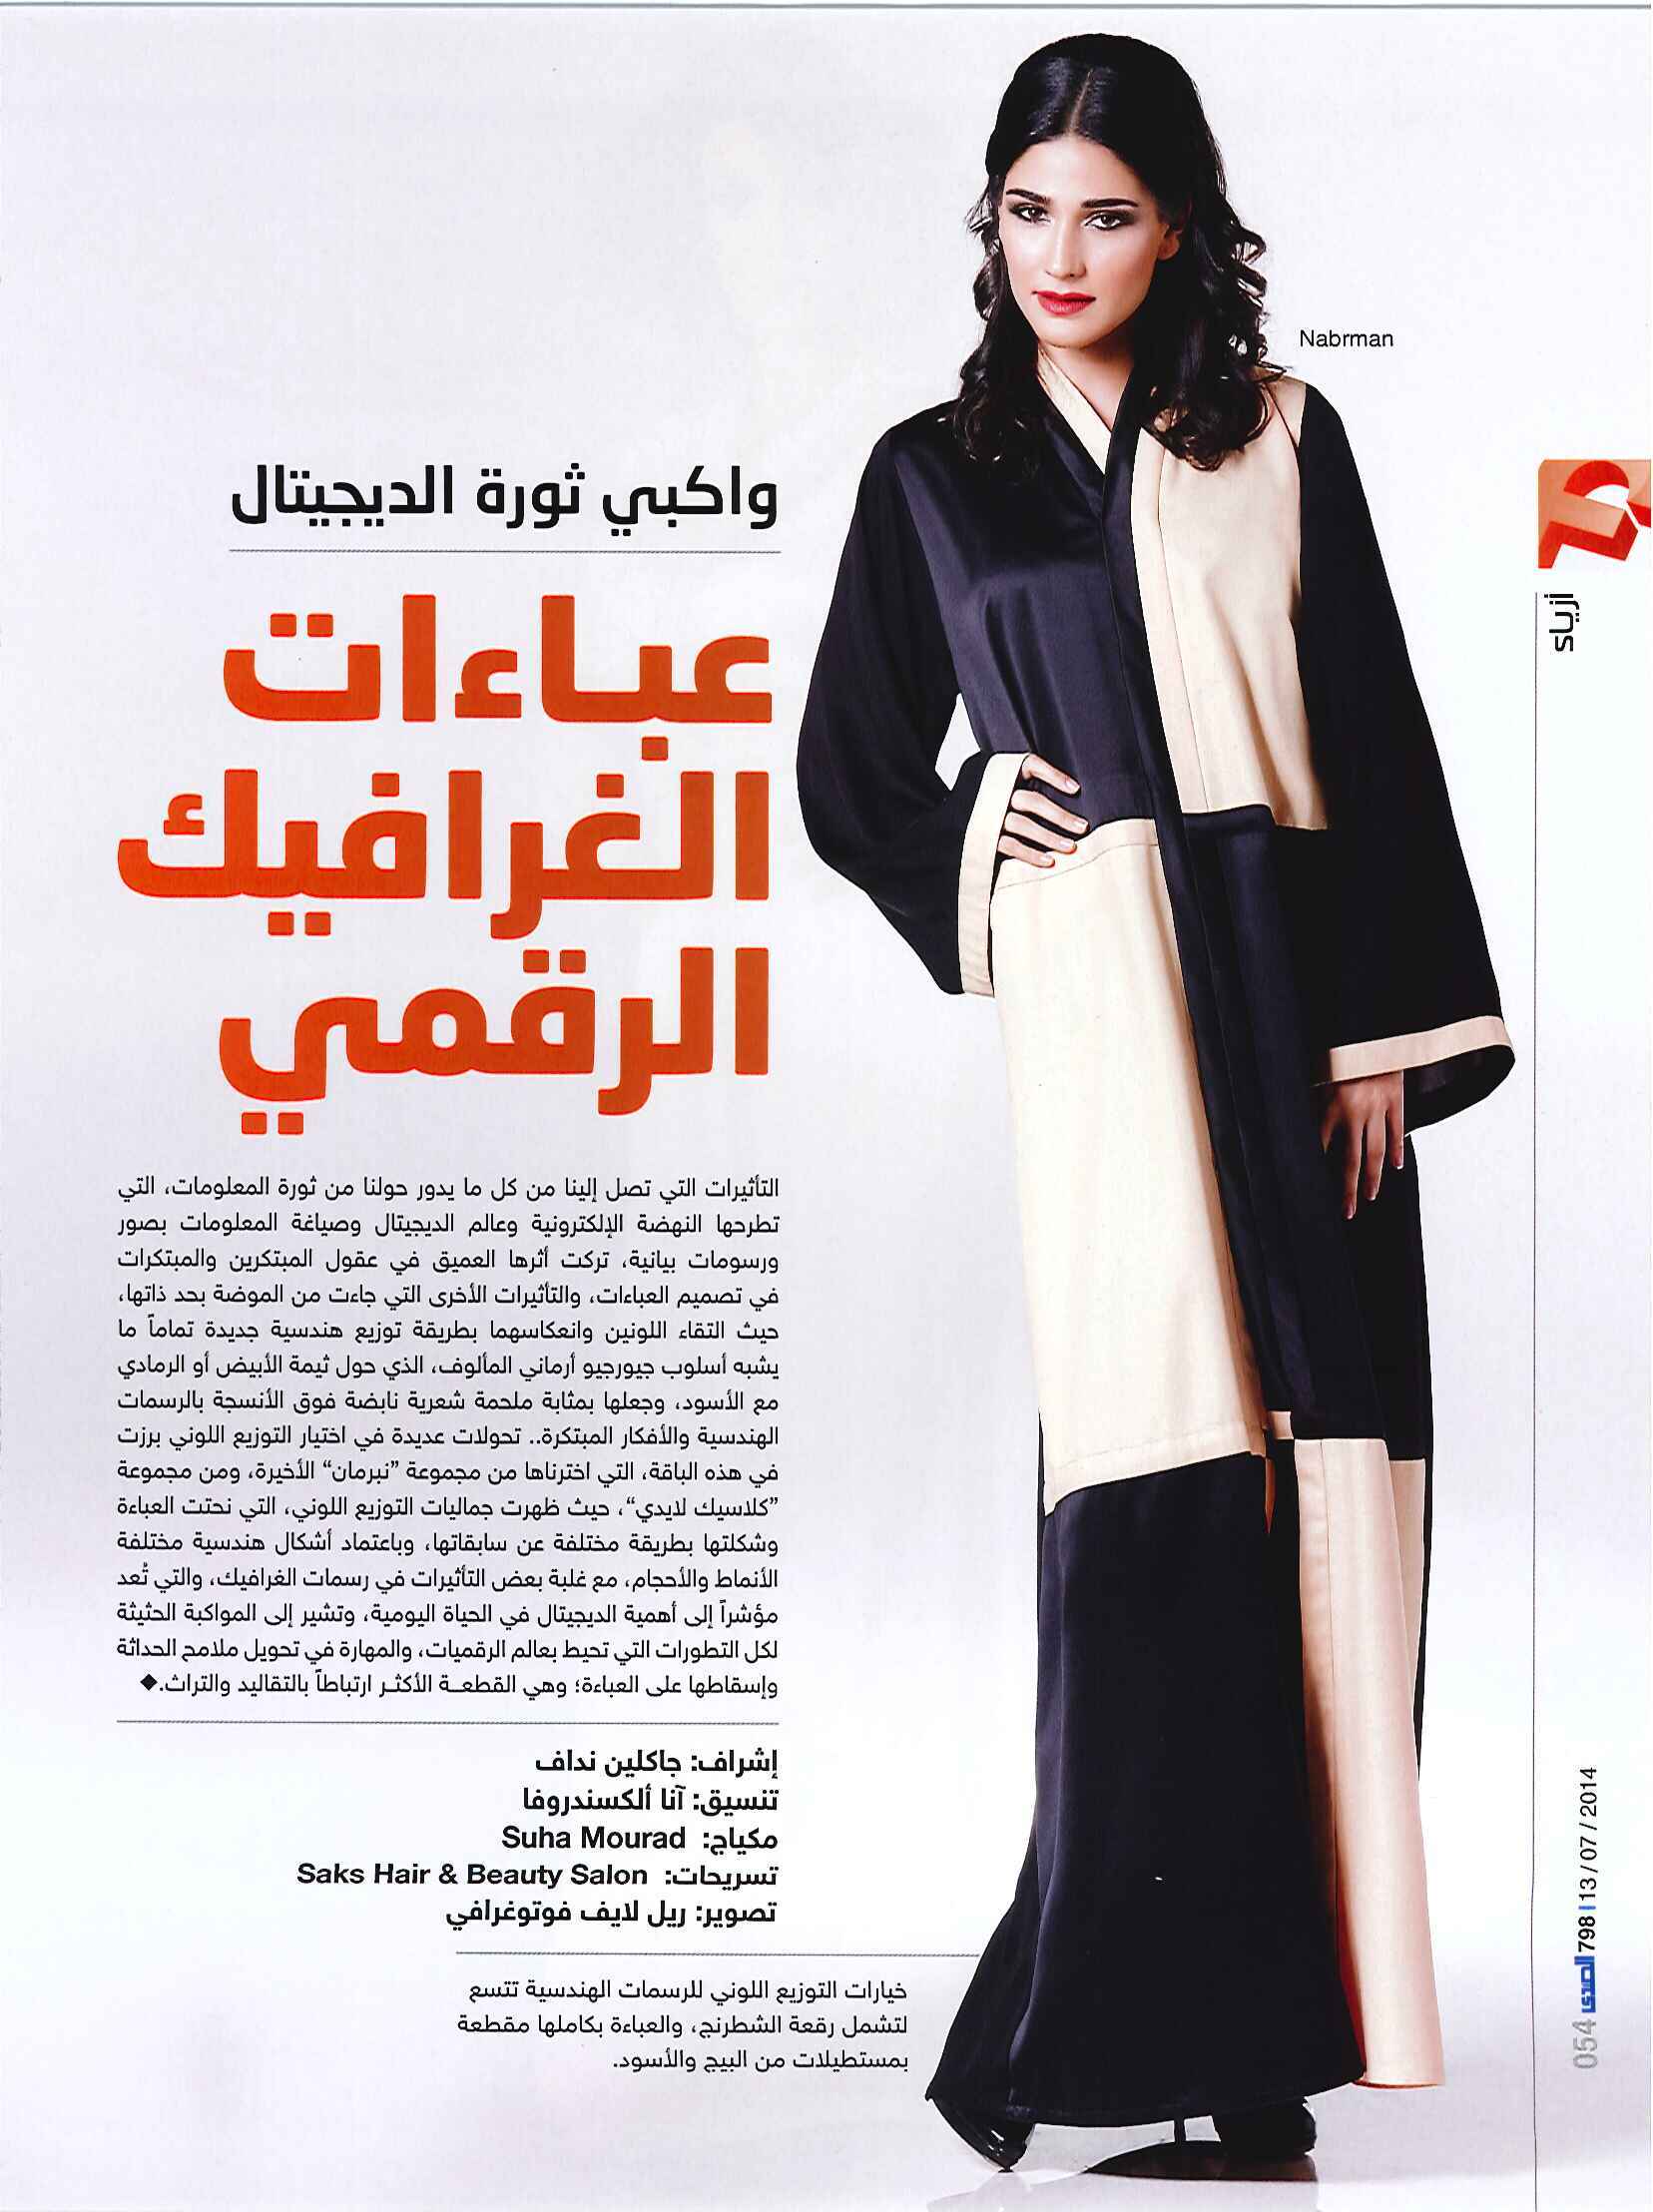 FLC Models & Talents - Print Campaigns - Al Sada - Veronica